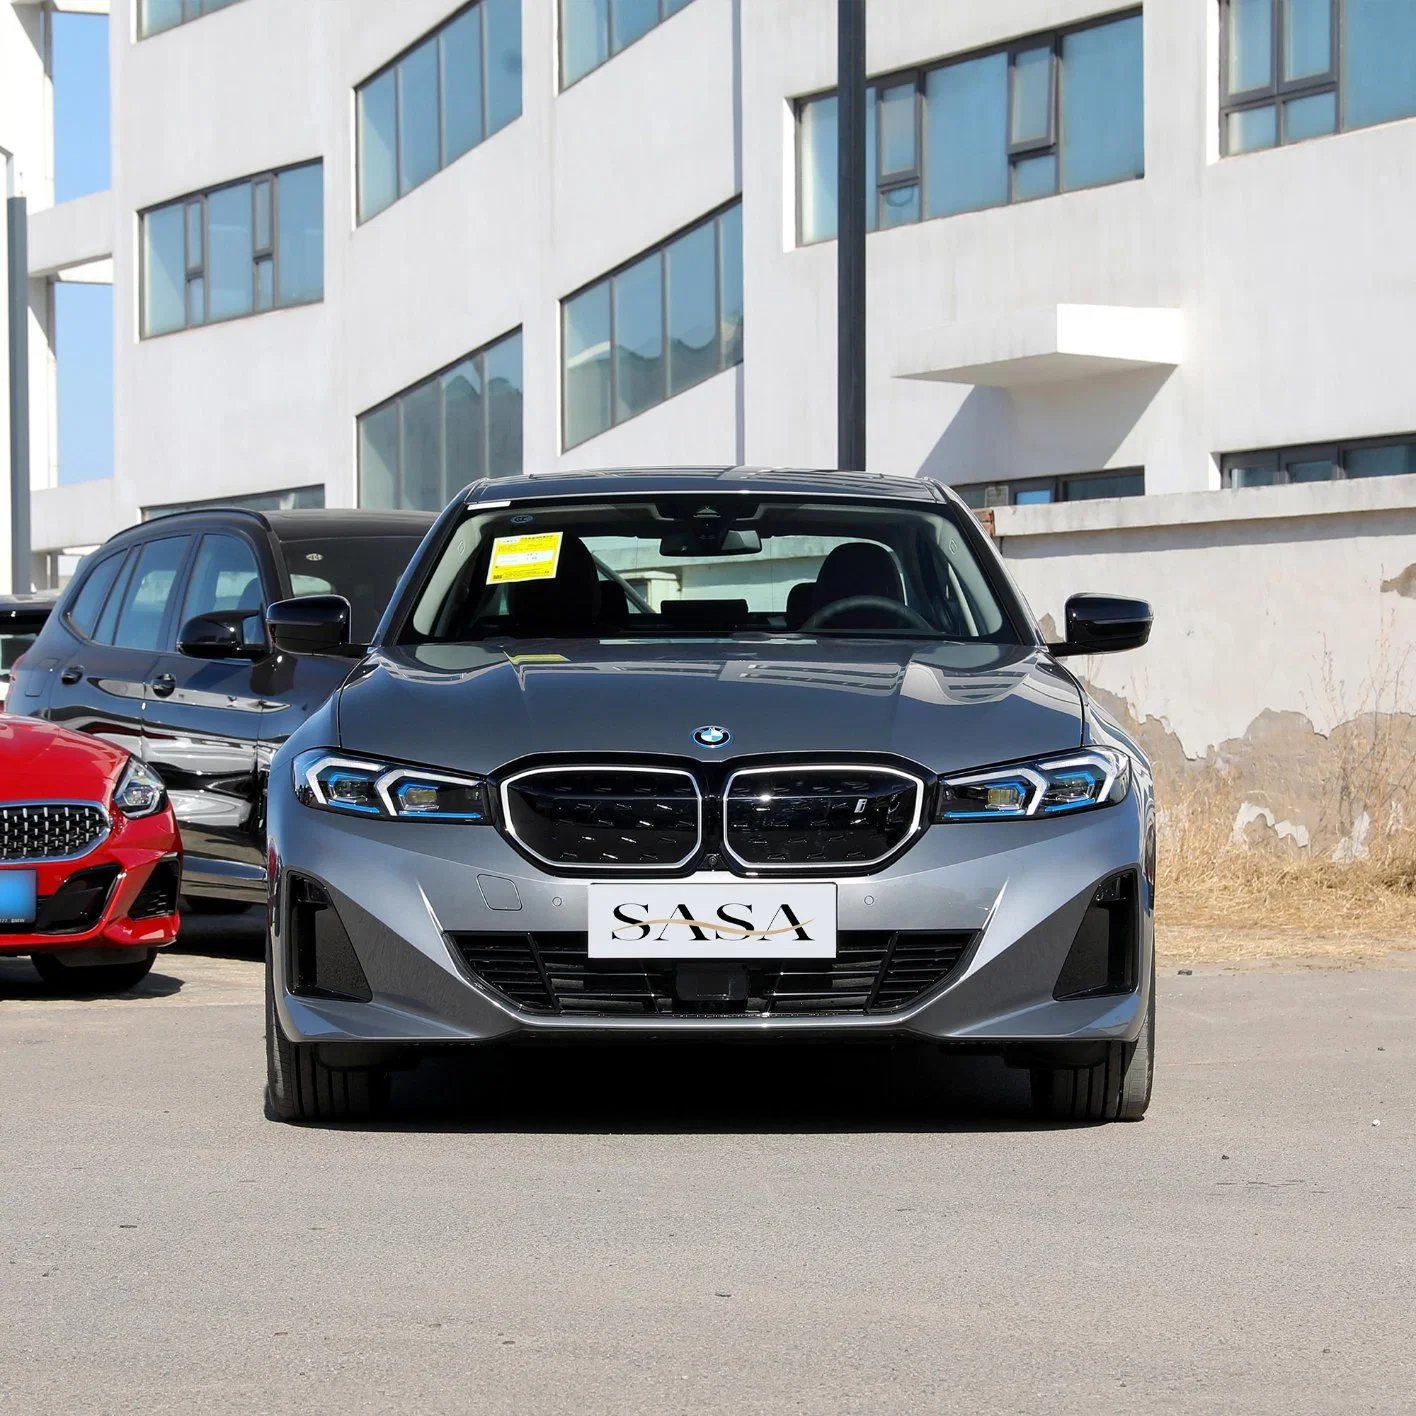 Carros usados BMW I3 Adulto novo carro de Energia 4 portas 5-Seat Carro usado Sedan rentável vendido